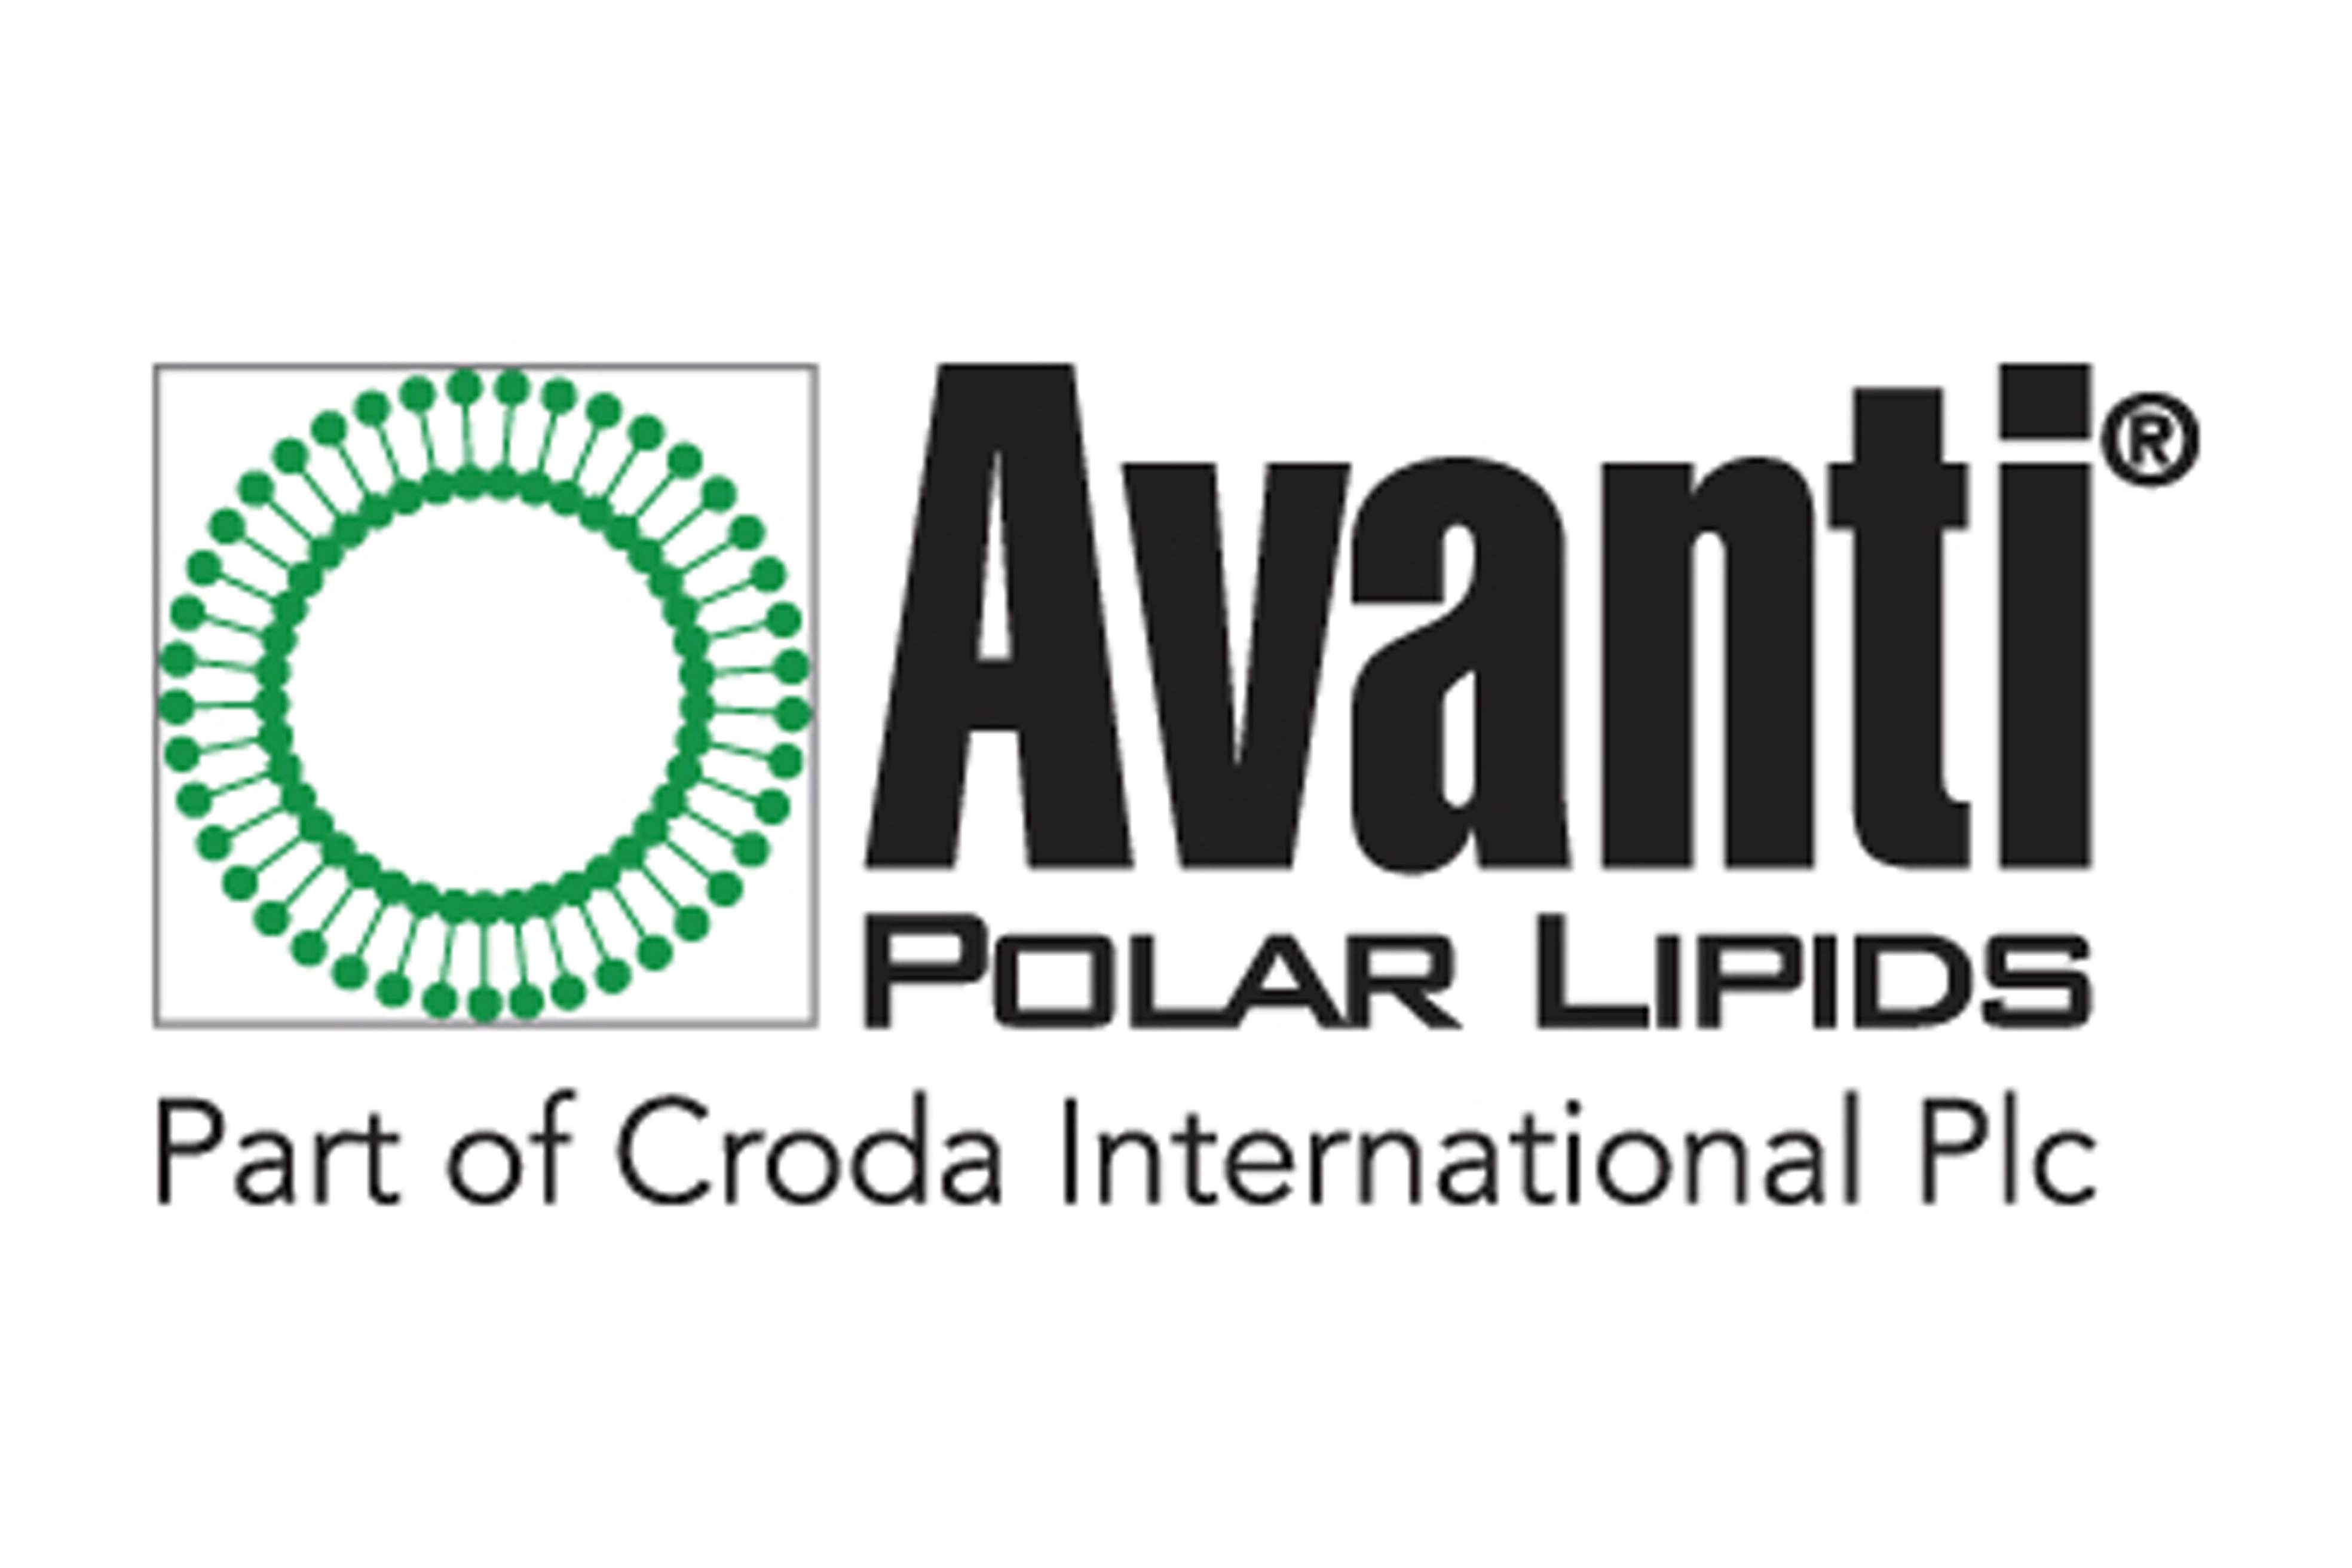 Logotipo de Avanti